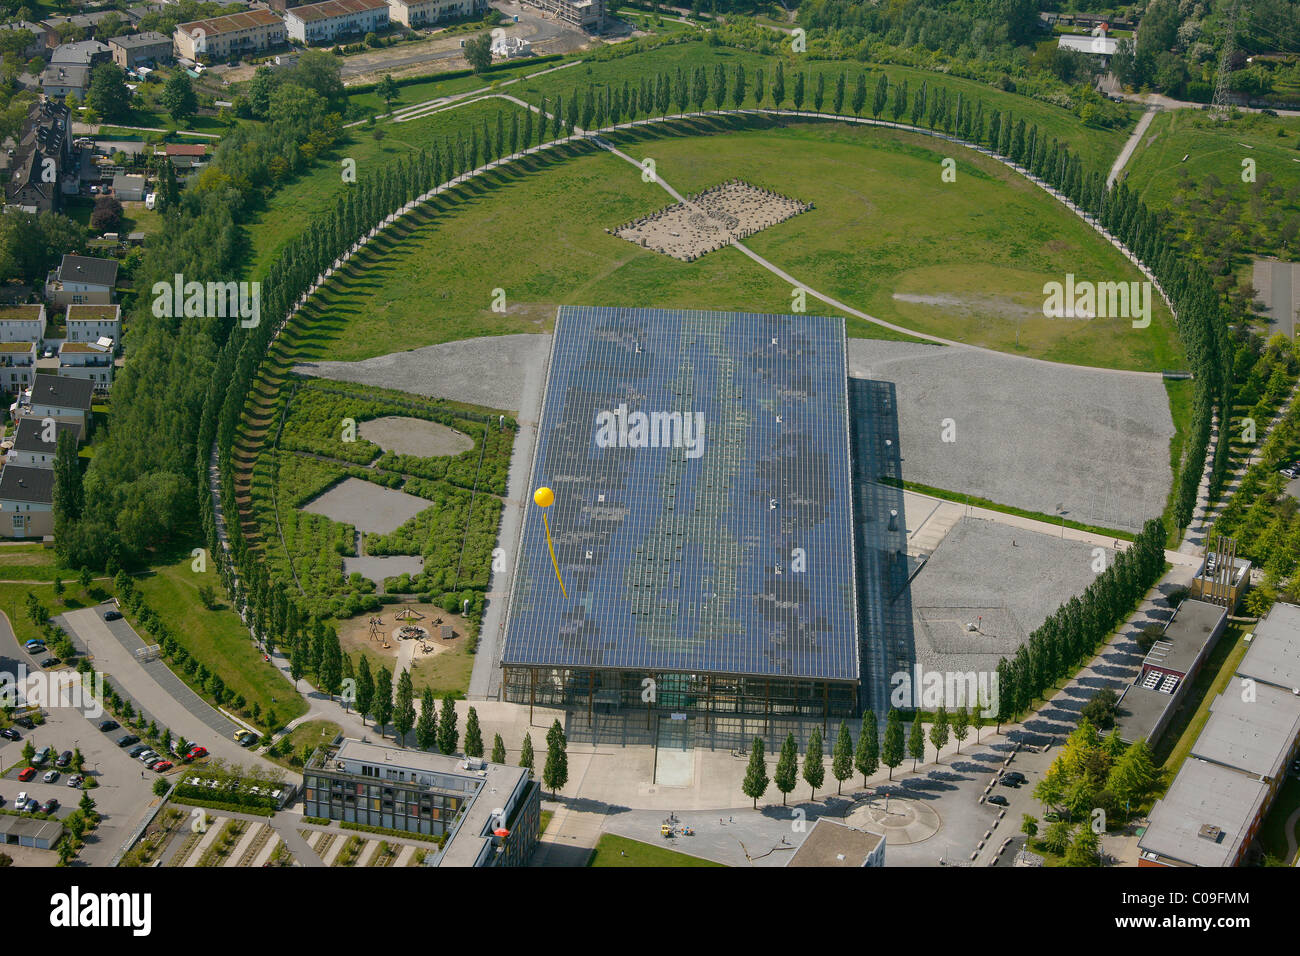 Luftaufnahme, ehemalige mine Mont Cenis 1, 3, 5 mit der Solarakademie Mt.Cenis solar Academy, Stadtteil Sodingen, Herne, Stockfoto